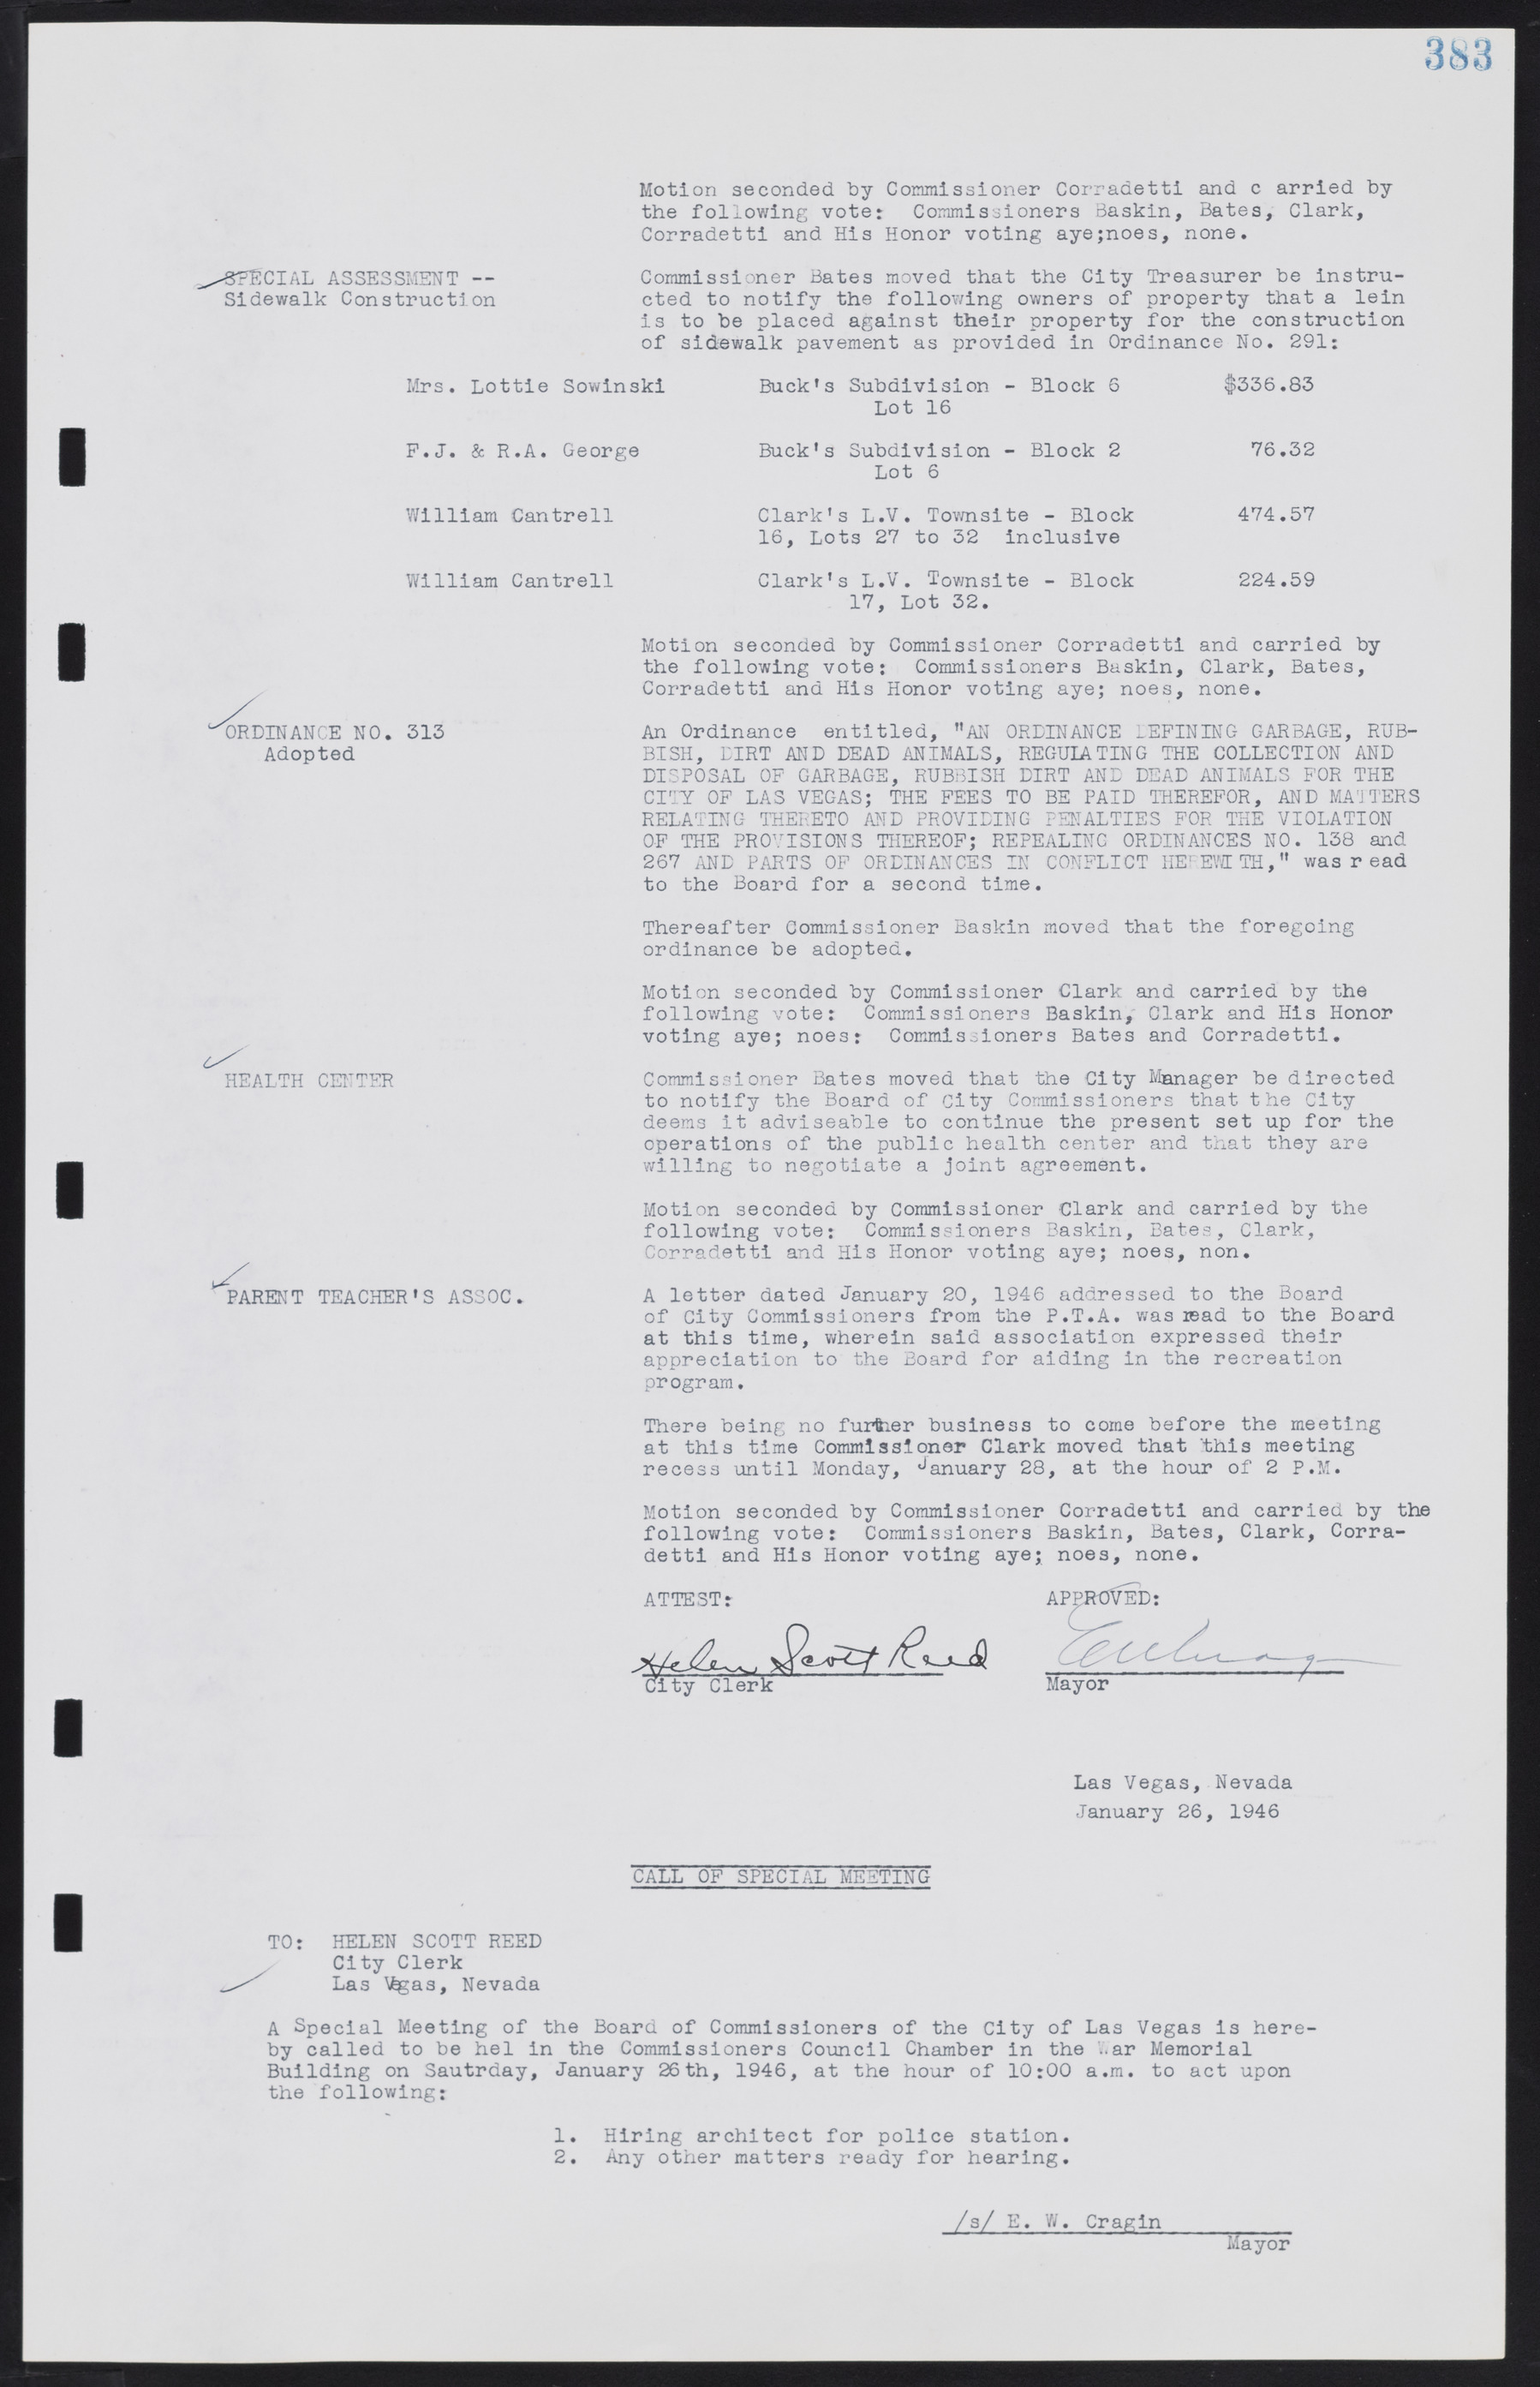 Las Vegas City Commission Minutes, August 11, 1942 to December 30, 1946, lvc000005-410